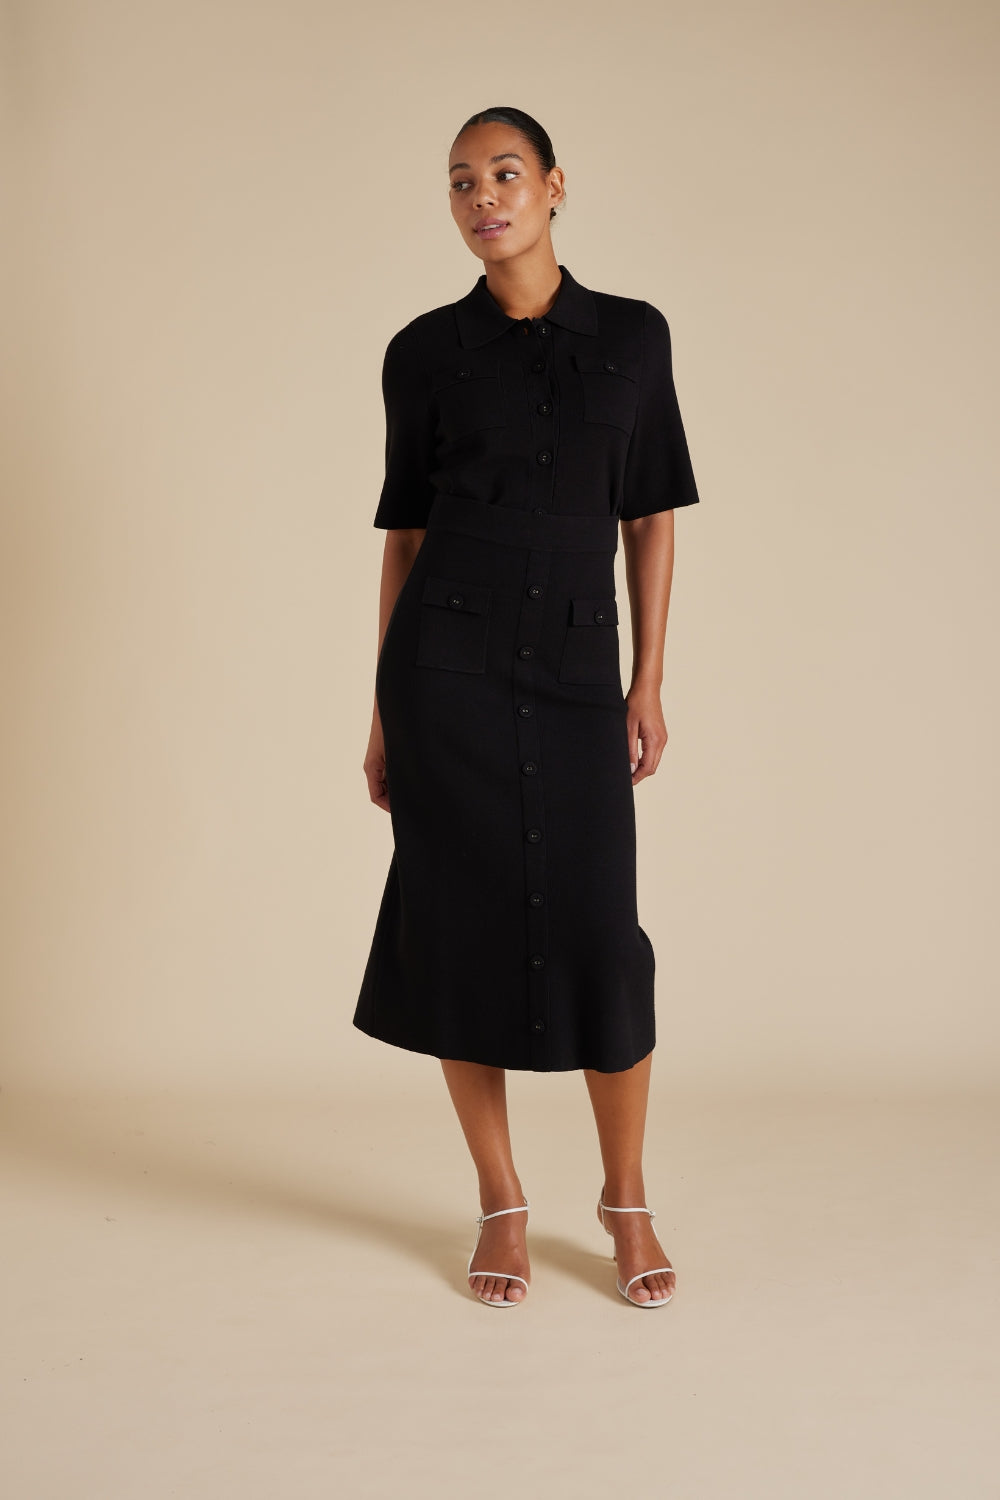 Alessandra | Chelsea Crepe Knit Skirt in Black